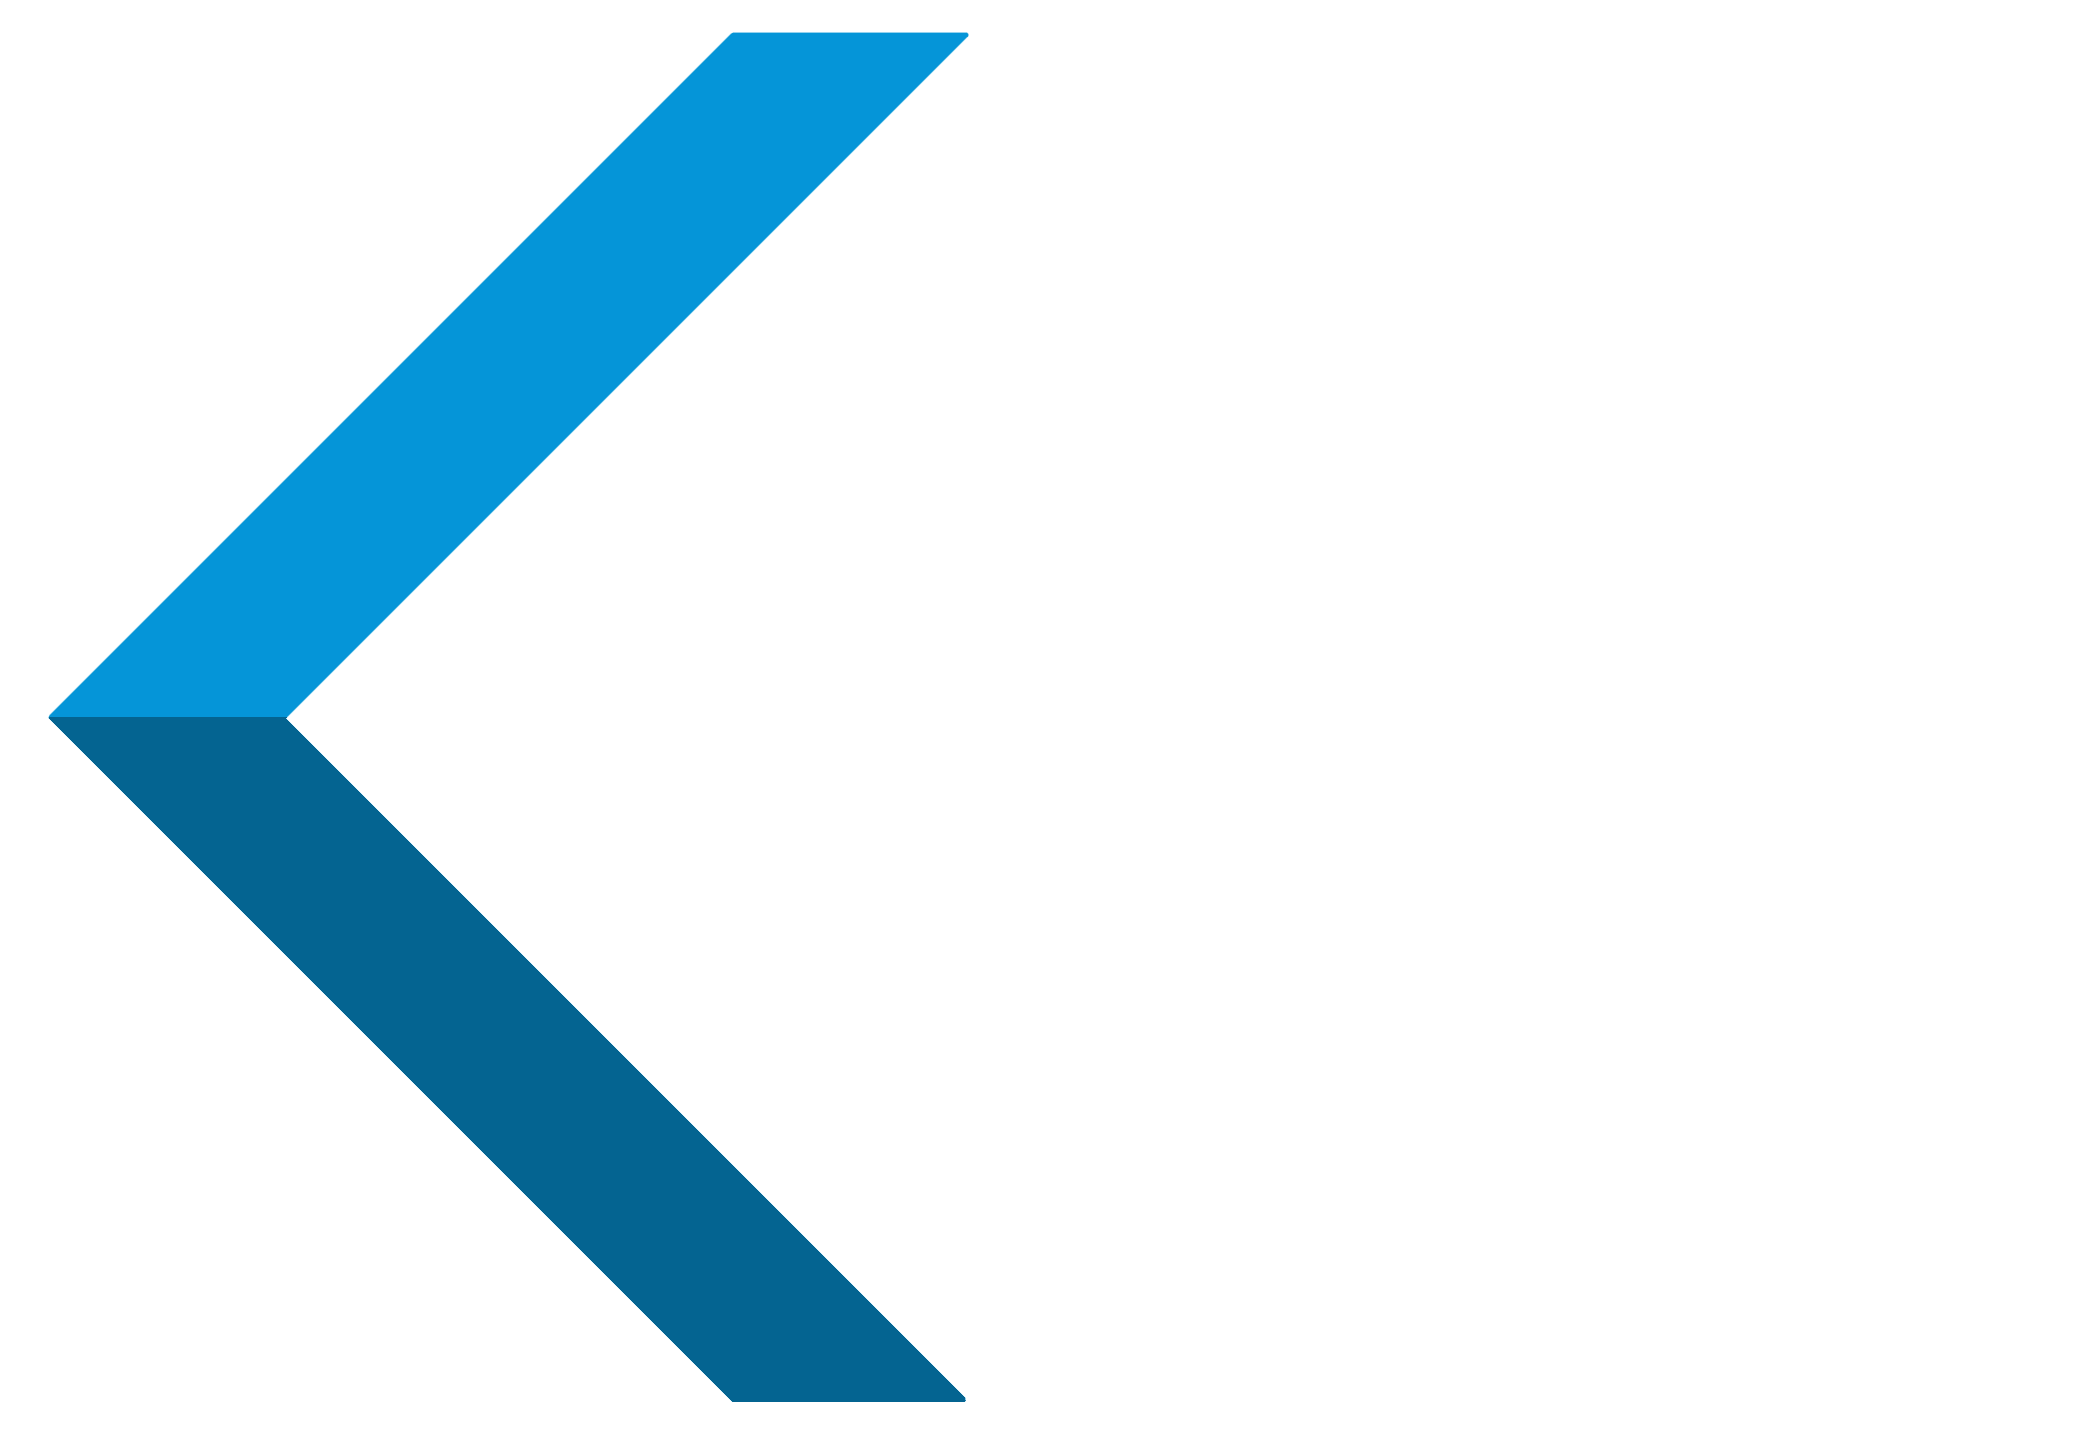 Kurated Korner